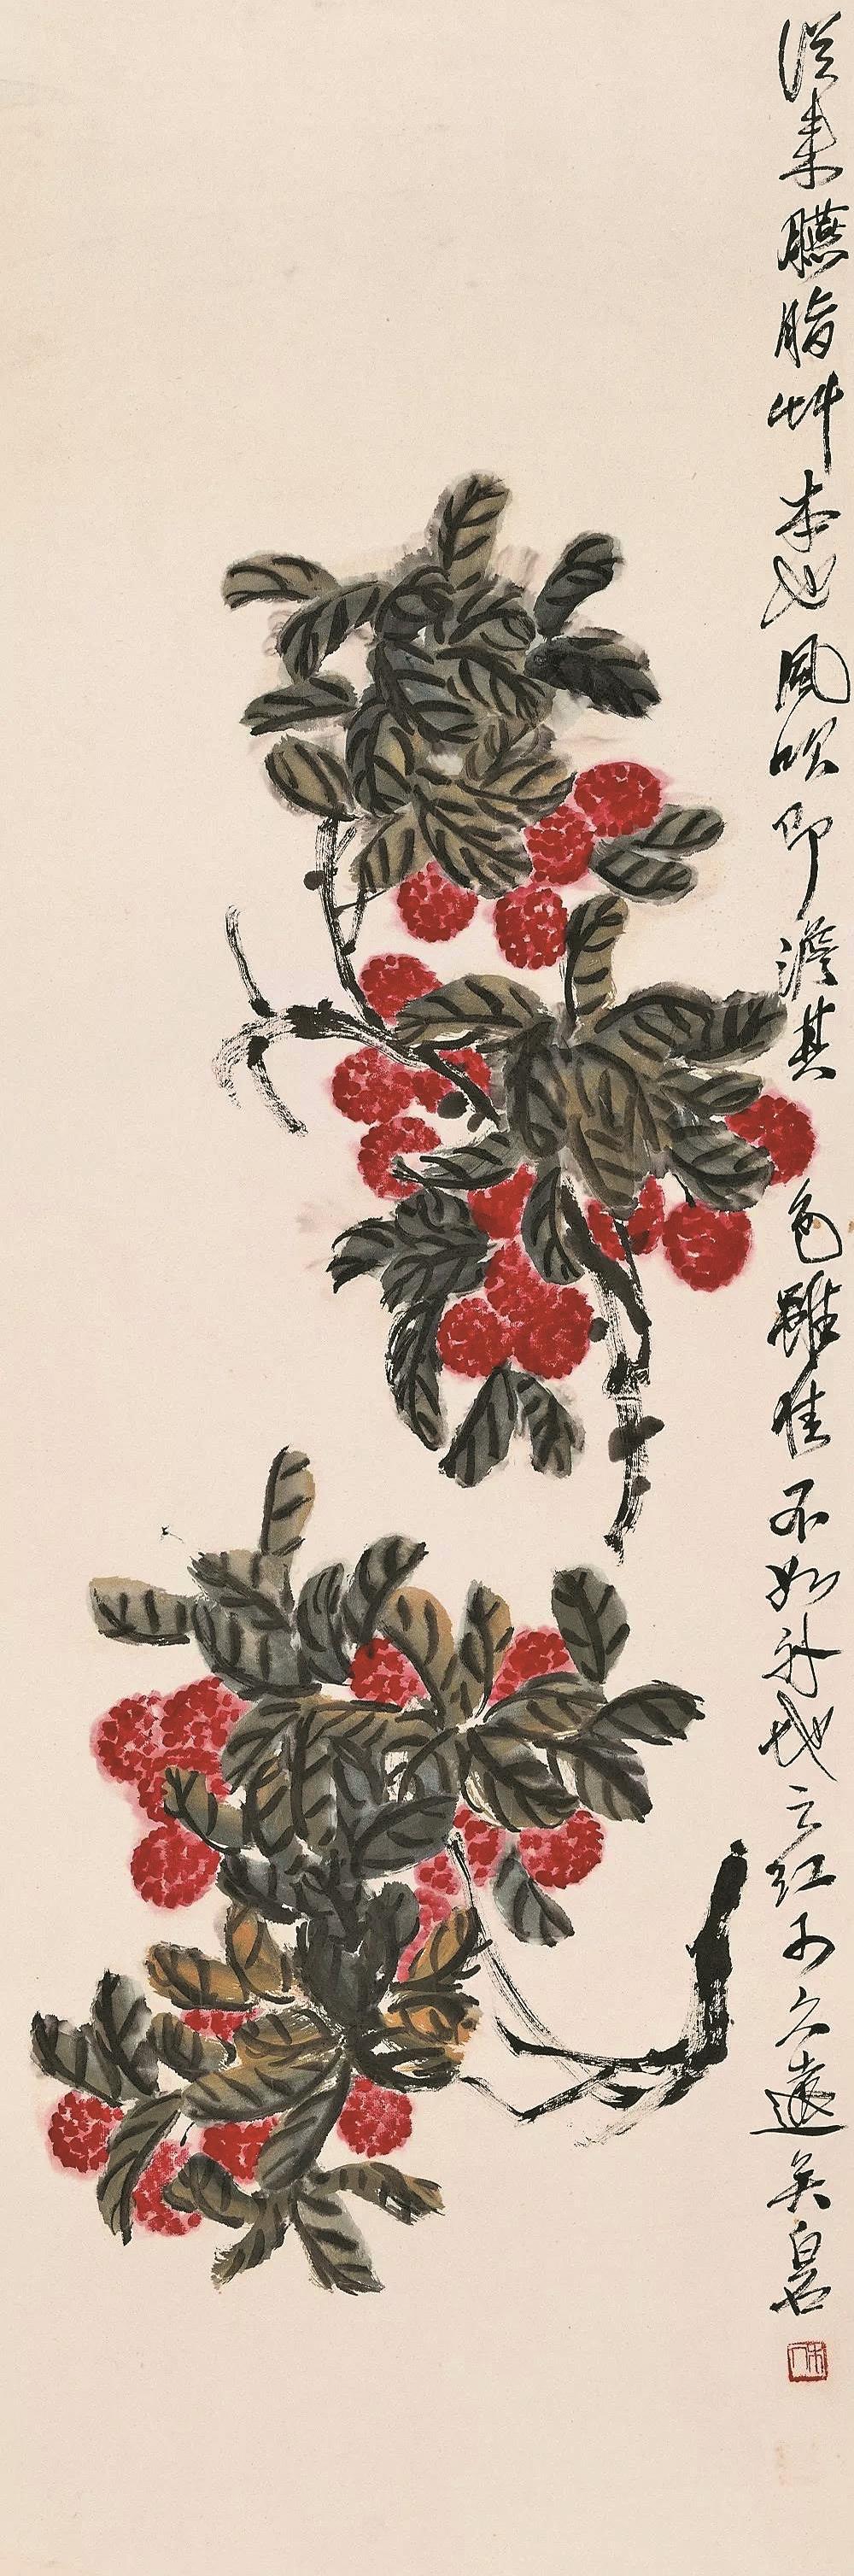 齐白石总结,自己的荔枝画创作自钦州之行开始,他曾在一幅《荔枝蜻蜓》